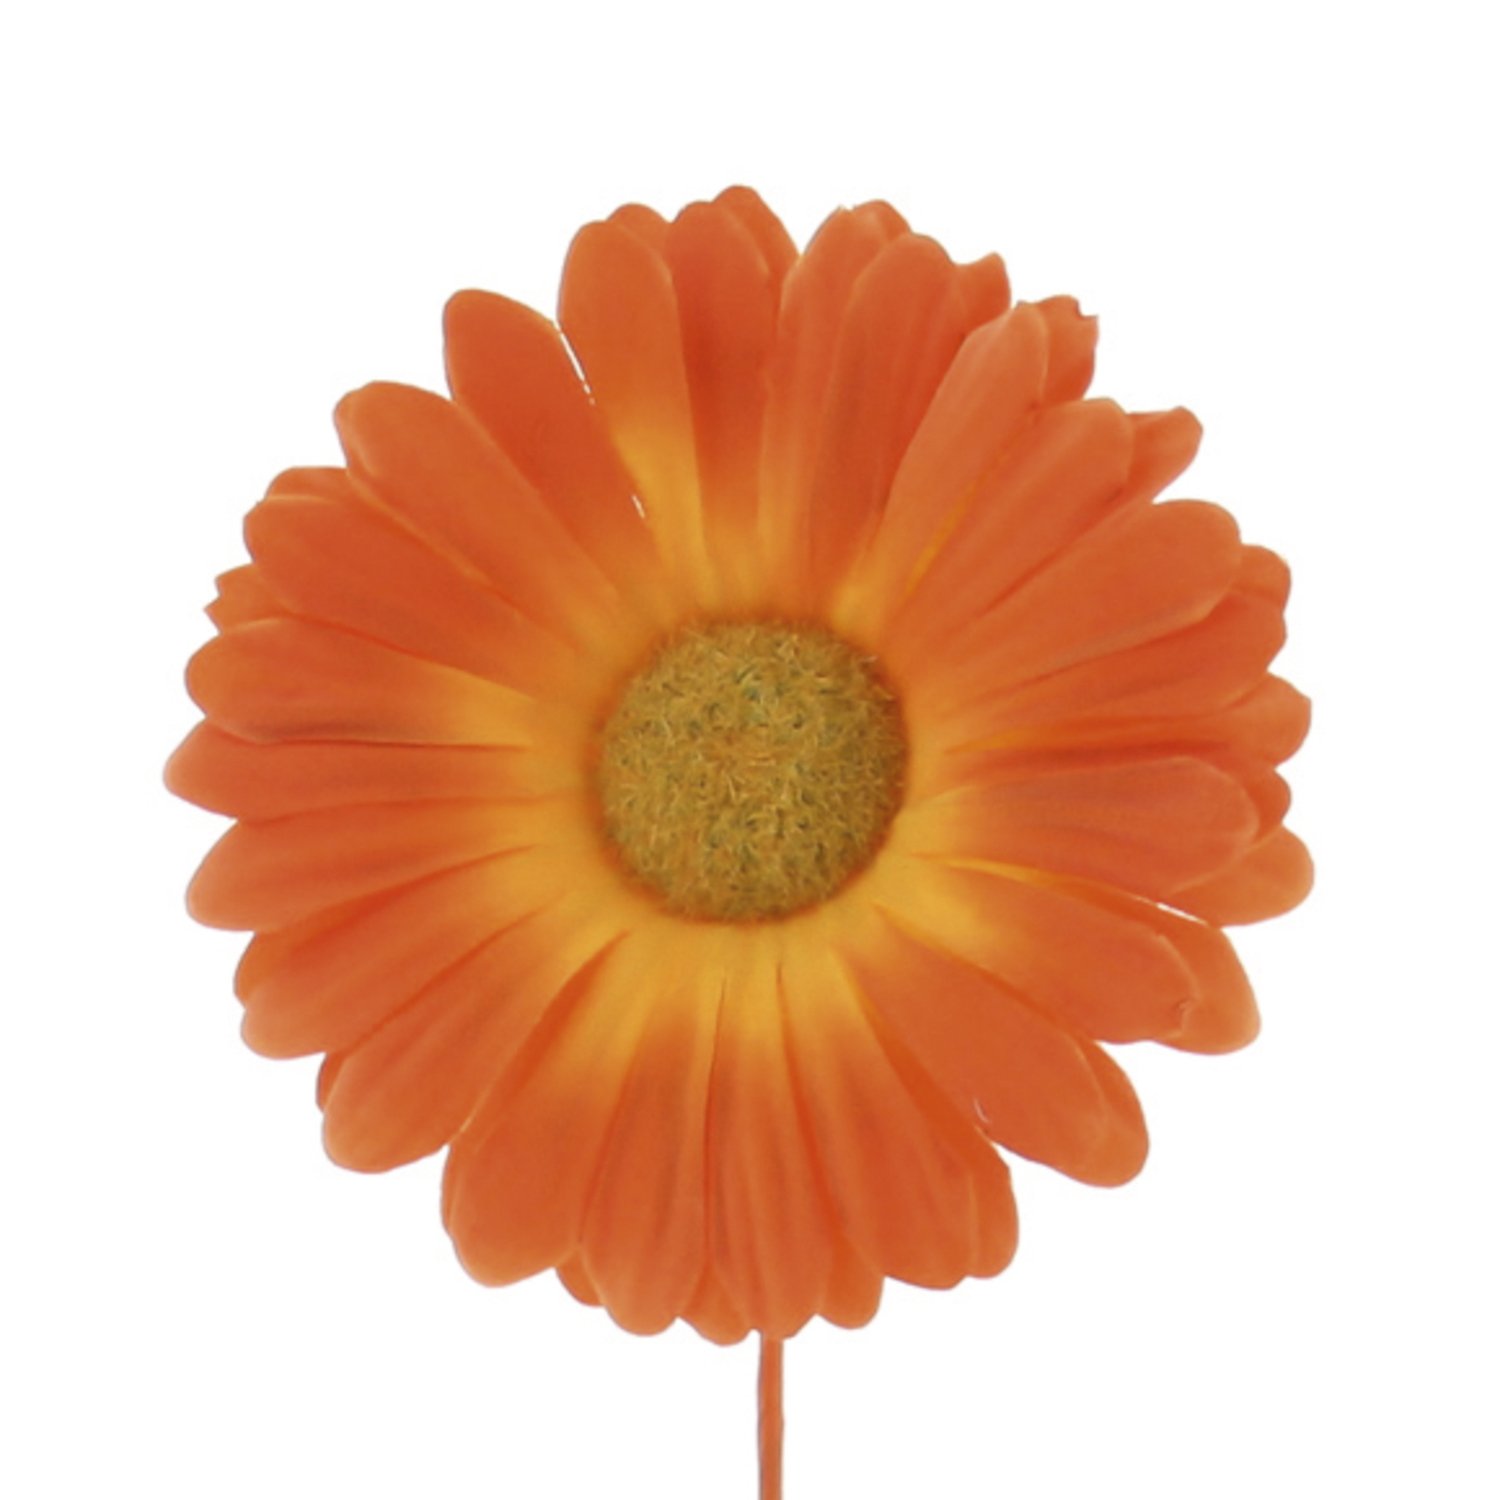 Germini orange coloured large flower decoration 15 x 9cm - 48pcs